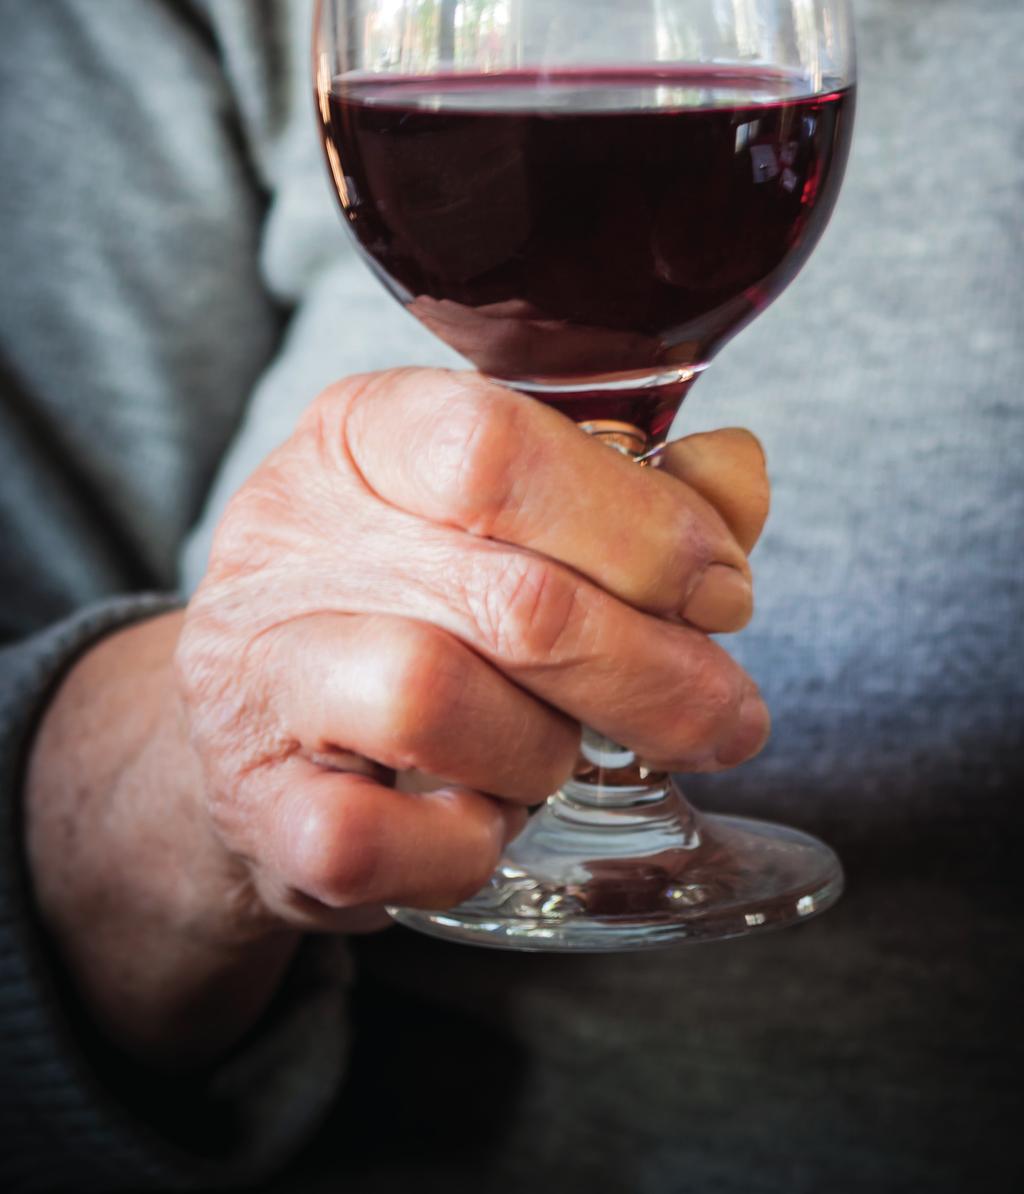 Wat is de aard en omvang van alcoholgebruik onder 55-plussers? Wat zijn kenmerken van 55-plussers die overmatig alcohol gebruiken? Welke ontwikkelingen in alcoholgebruik zijn er met het ouder worden?